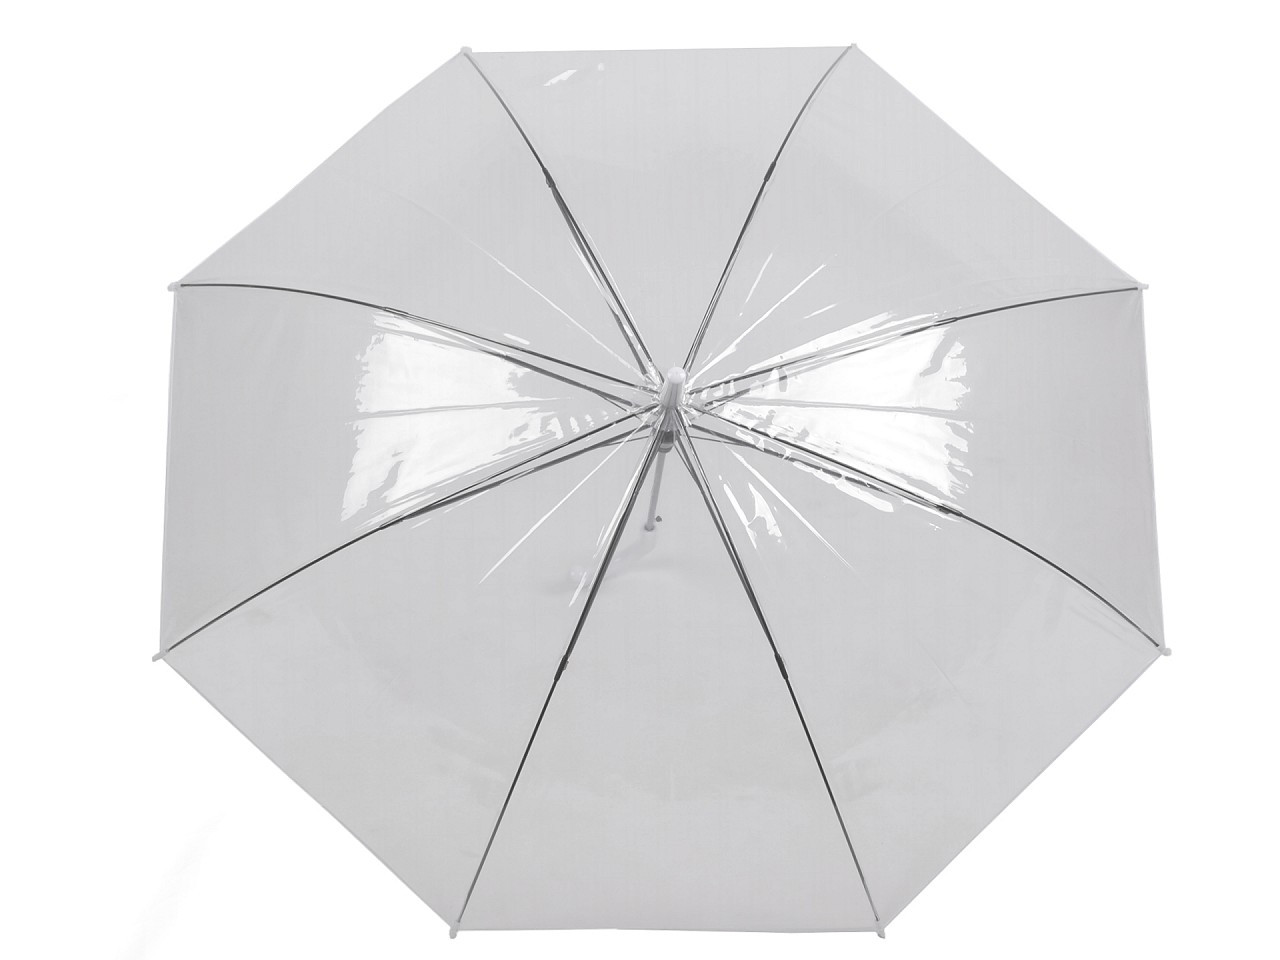 Dámský / svatební průhledný vystřelovací deštník, barva transparent bílá